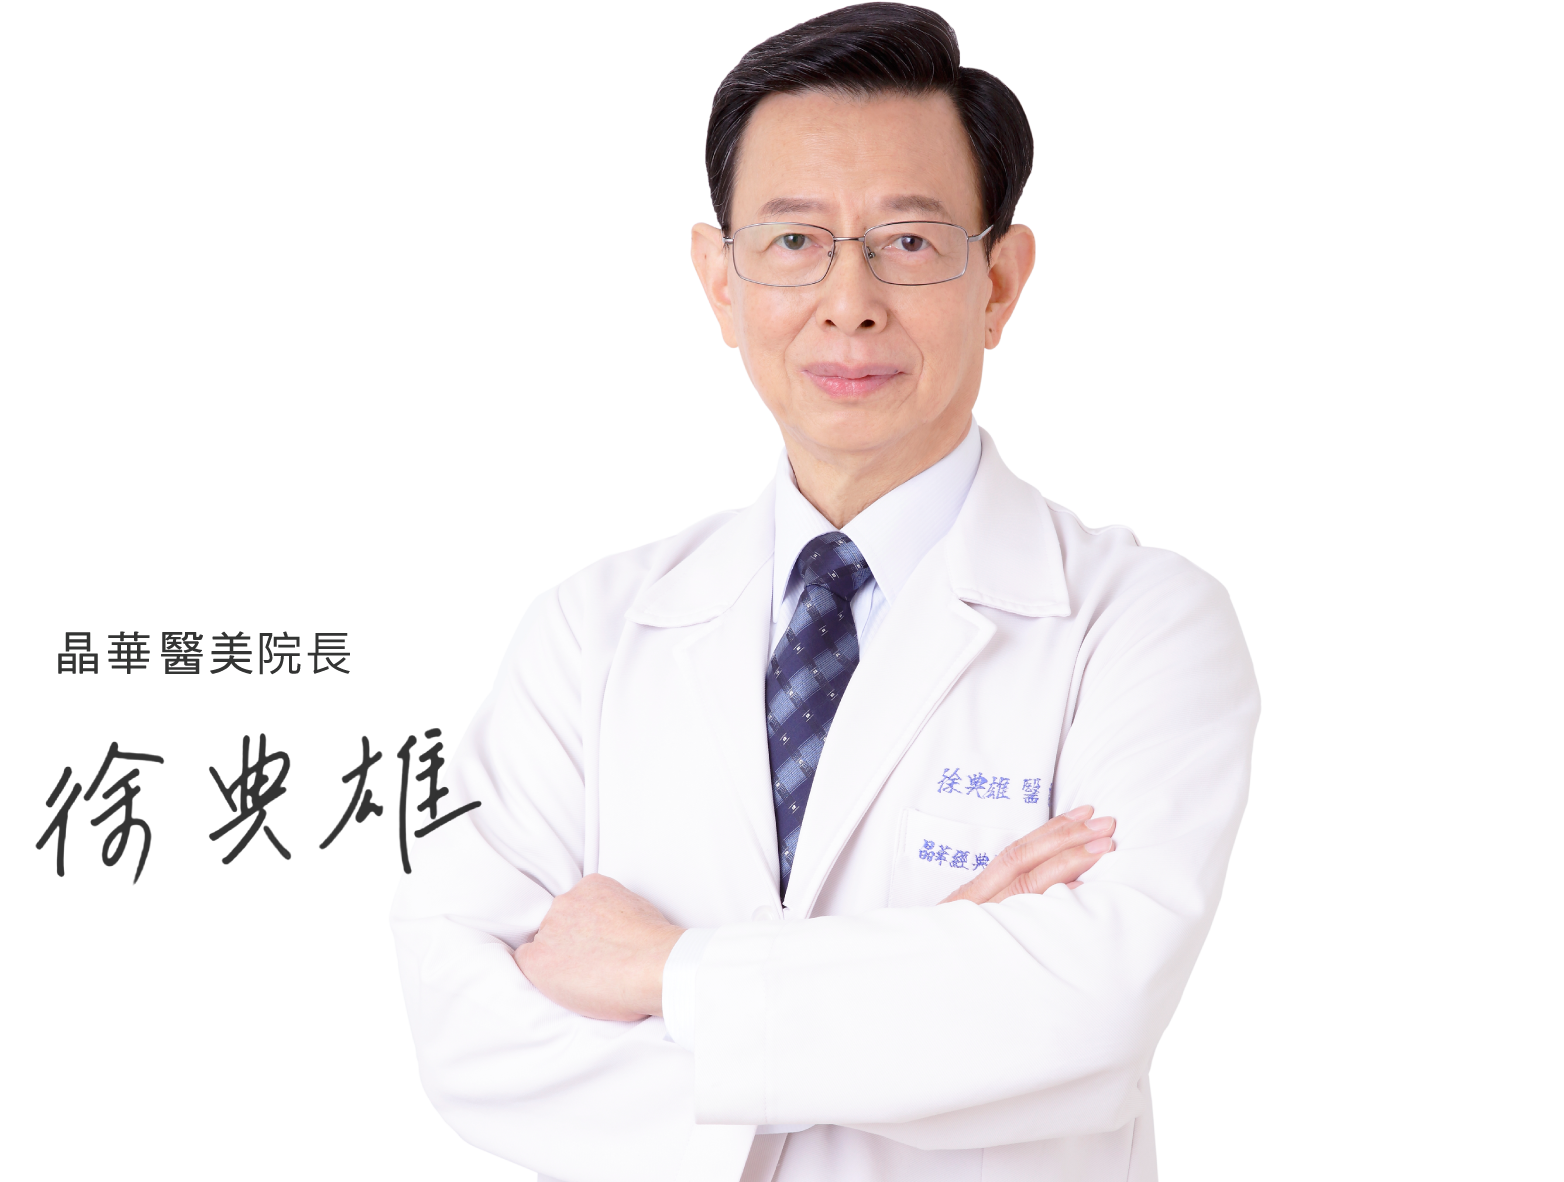 台北、桃園晶華醫美眼袋整形手術推薦 徐典雄醫師